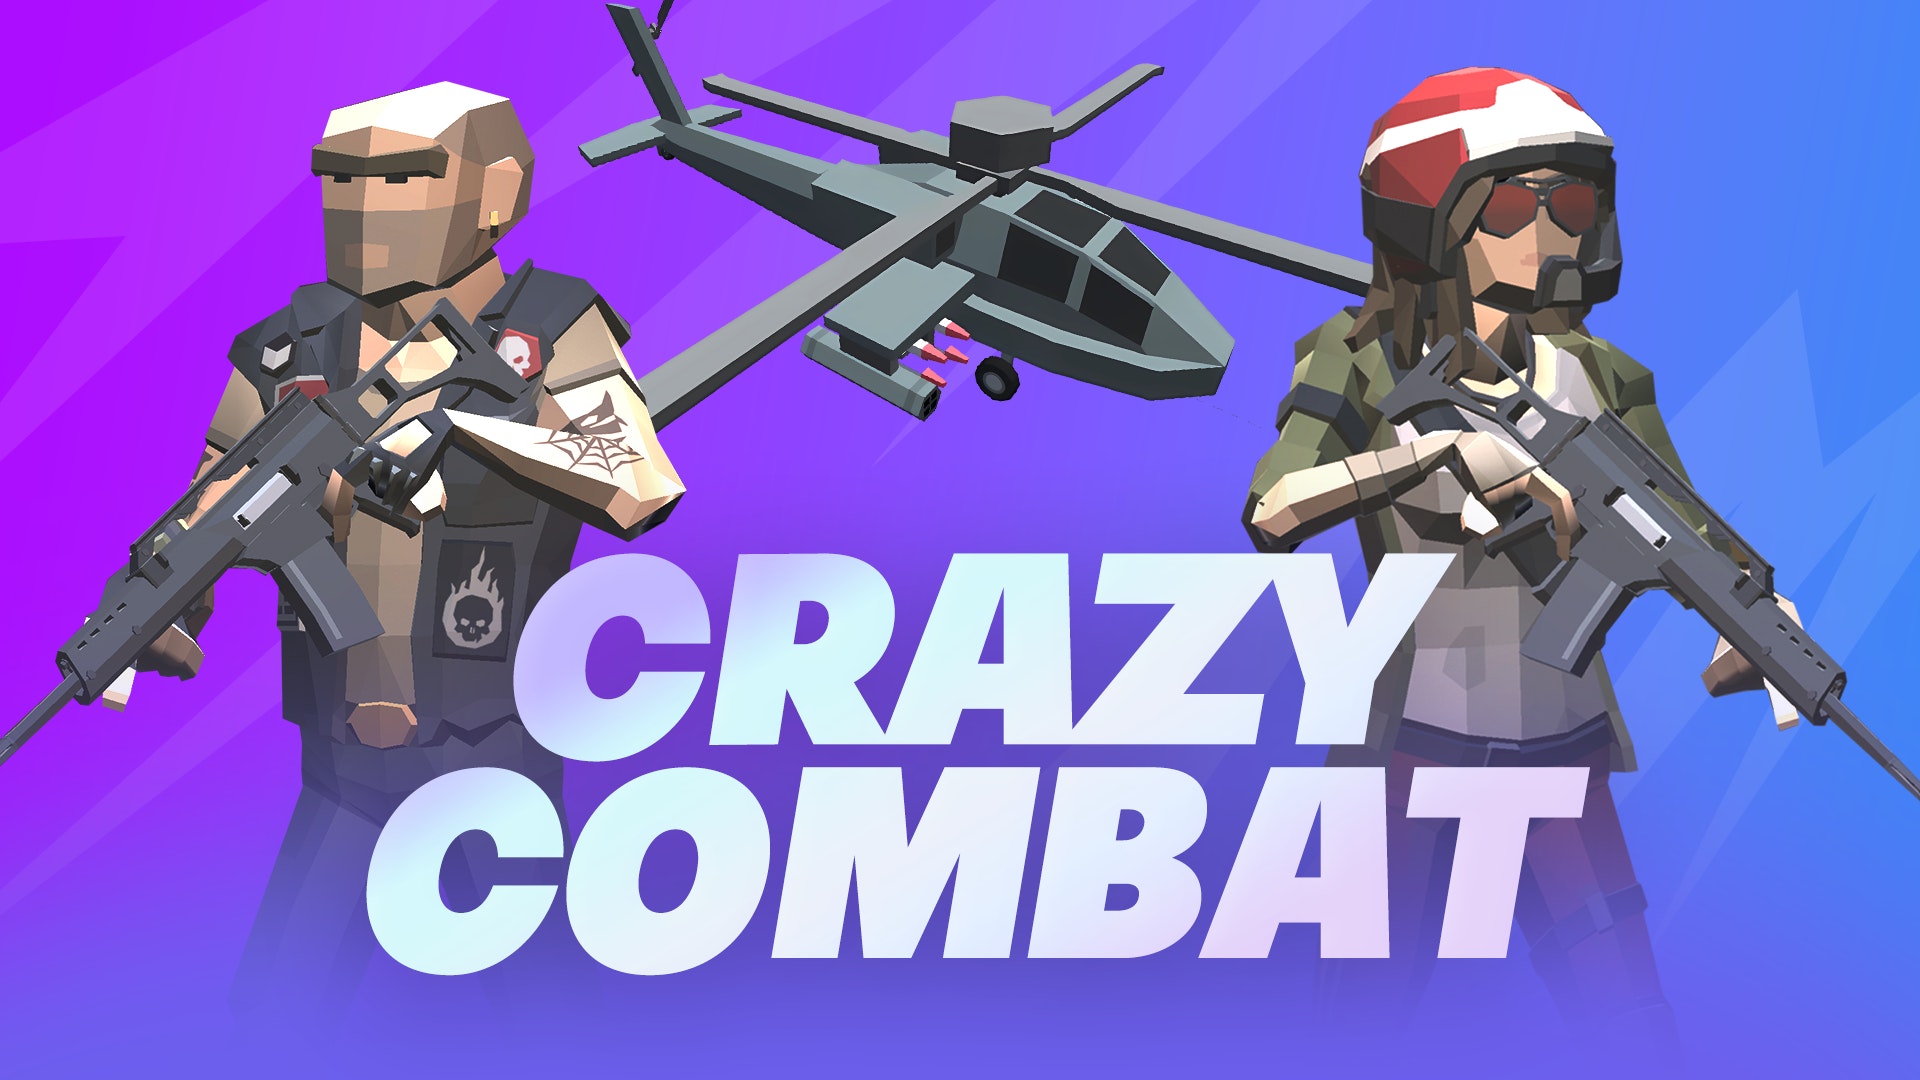 1v1 Battle 🕹️ Play on CrazyGames